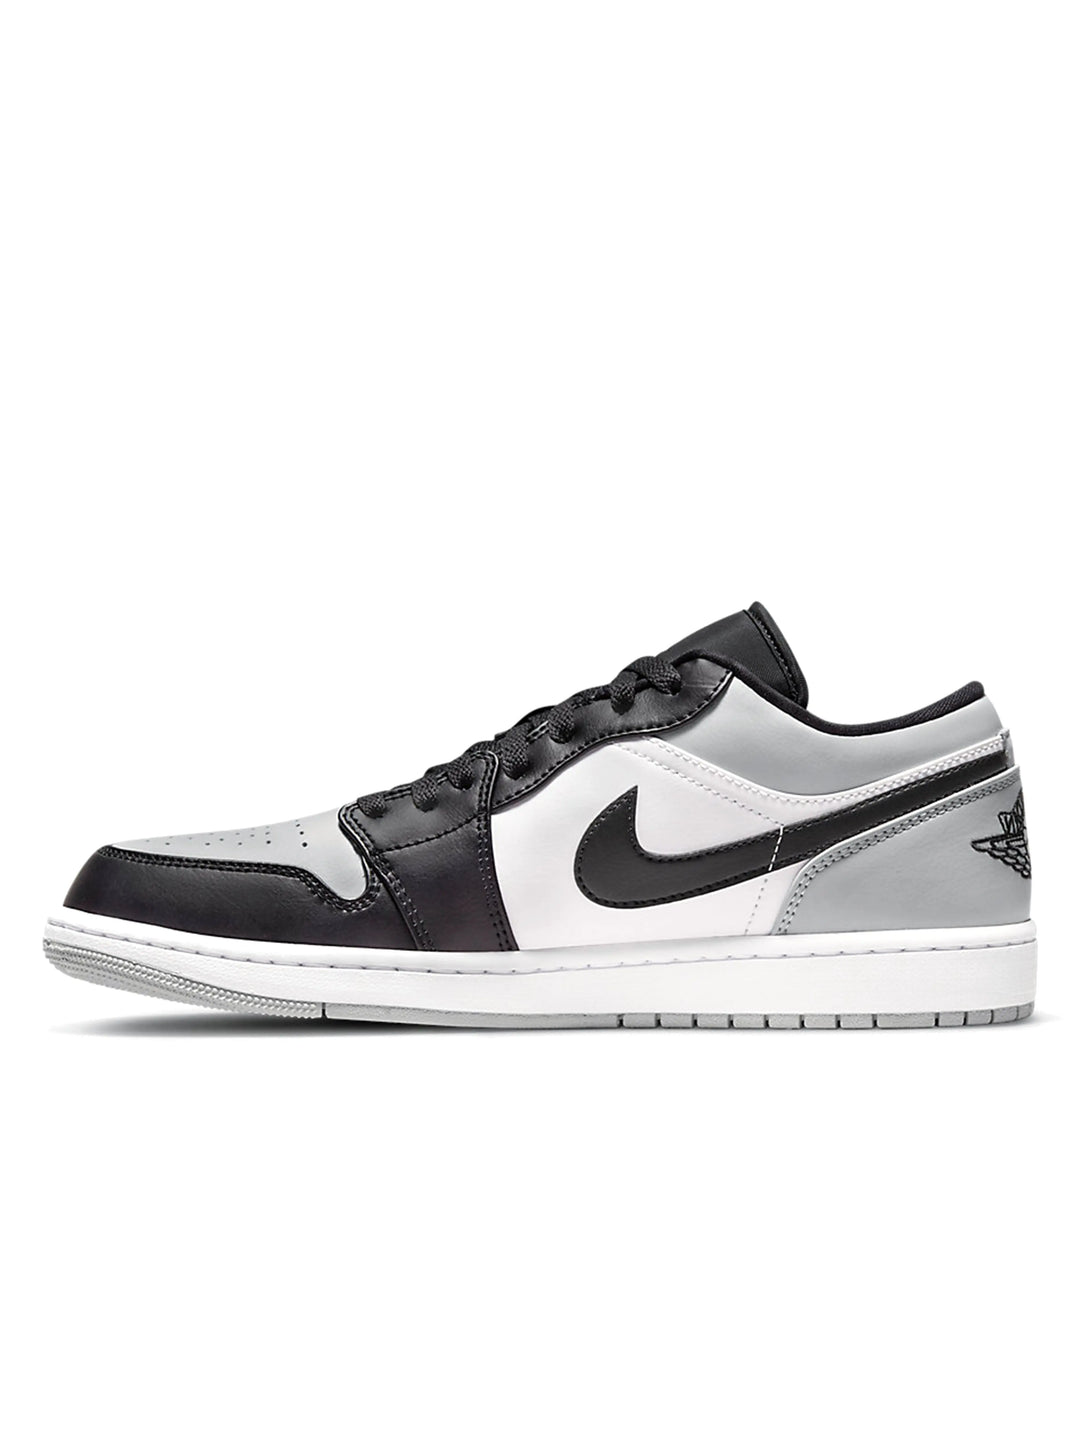 Nike Air Jordan 1 Low Shadow Toe (GS) Prior